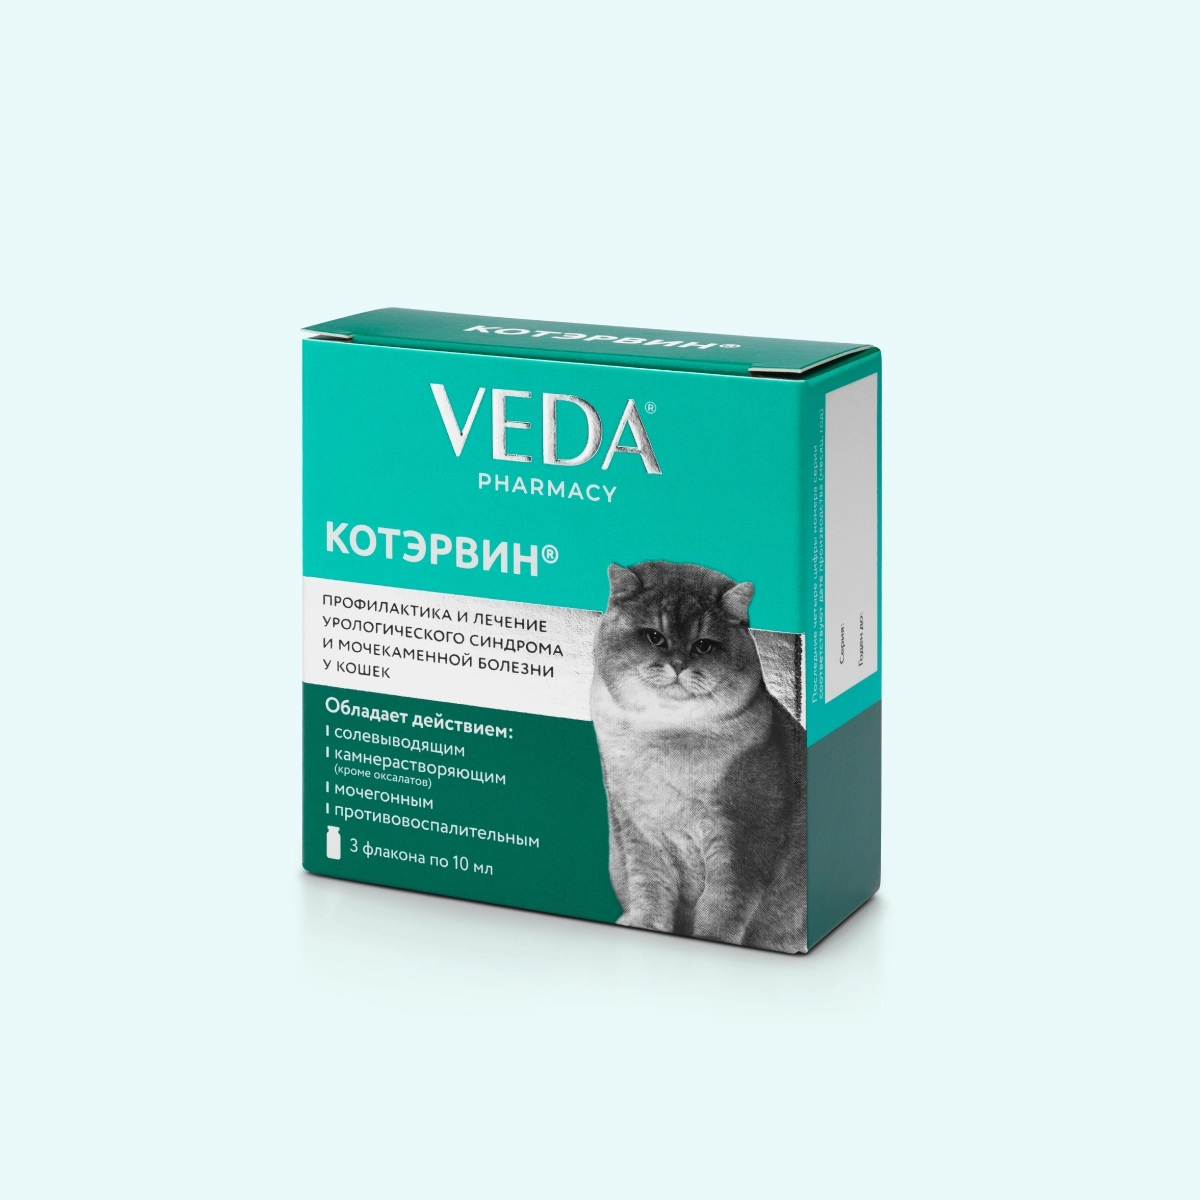 Ветеринарный препарат Веда НПЛ для кошки